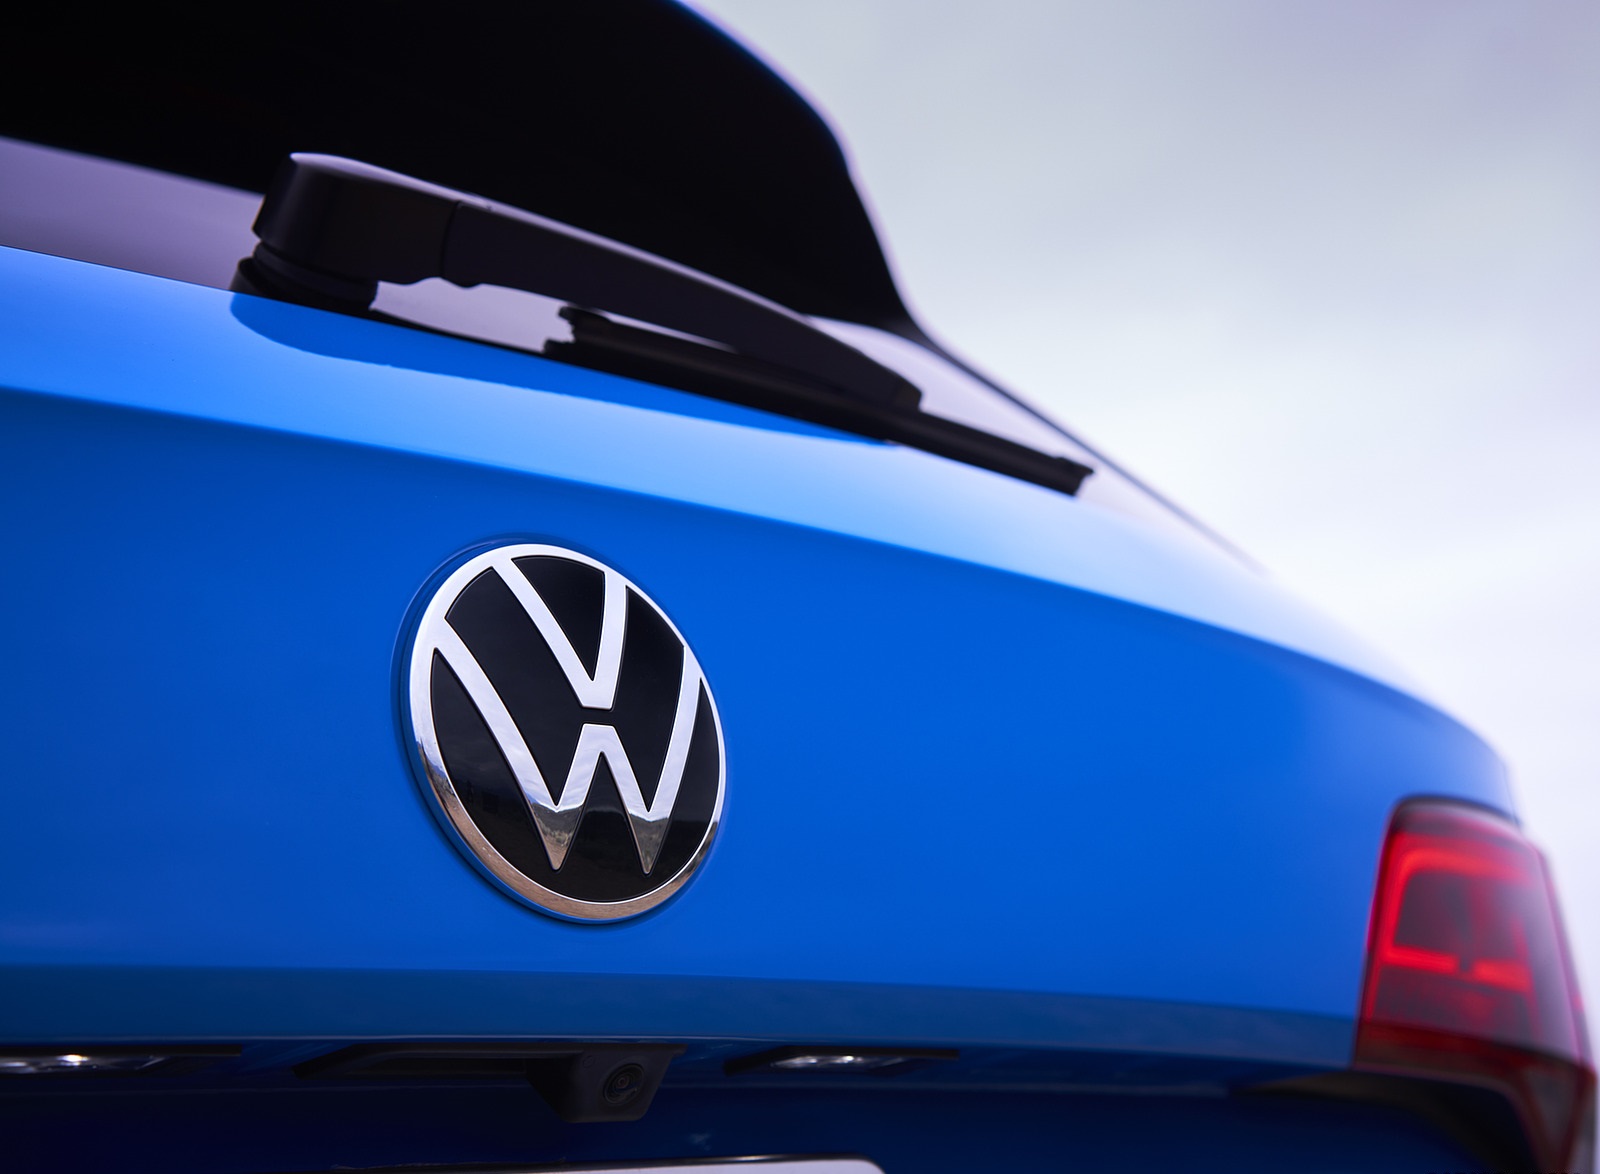 2022 Volkswagen Taos Badge Wallpapers #23 of 50